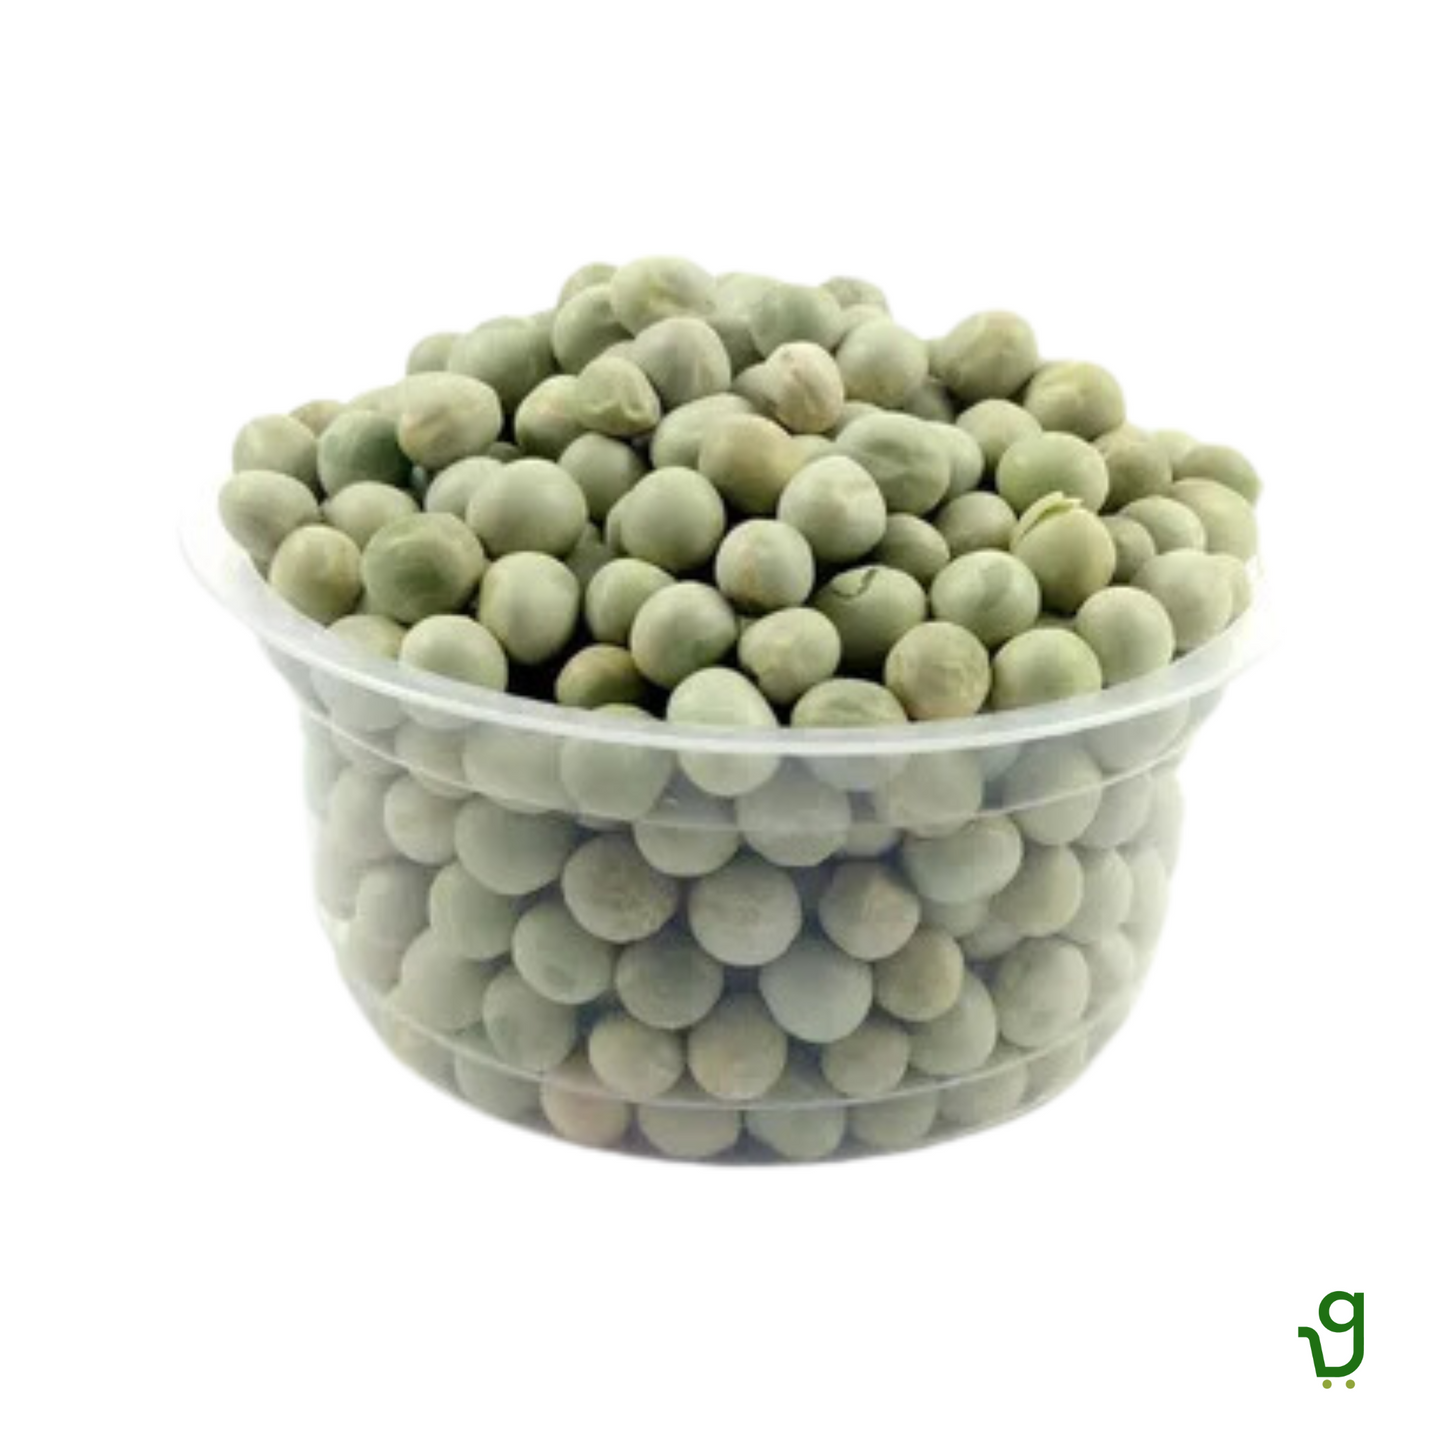 Green Peas Dry (1 Kg)